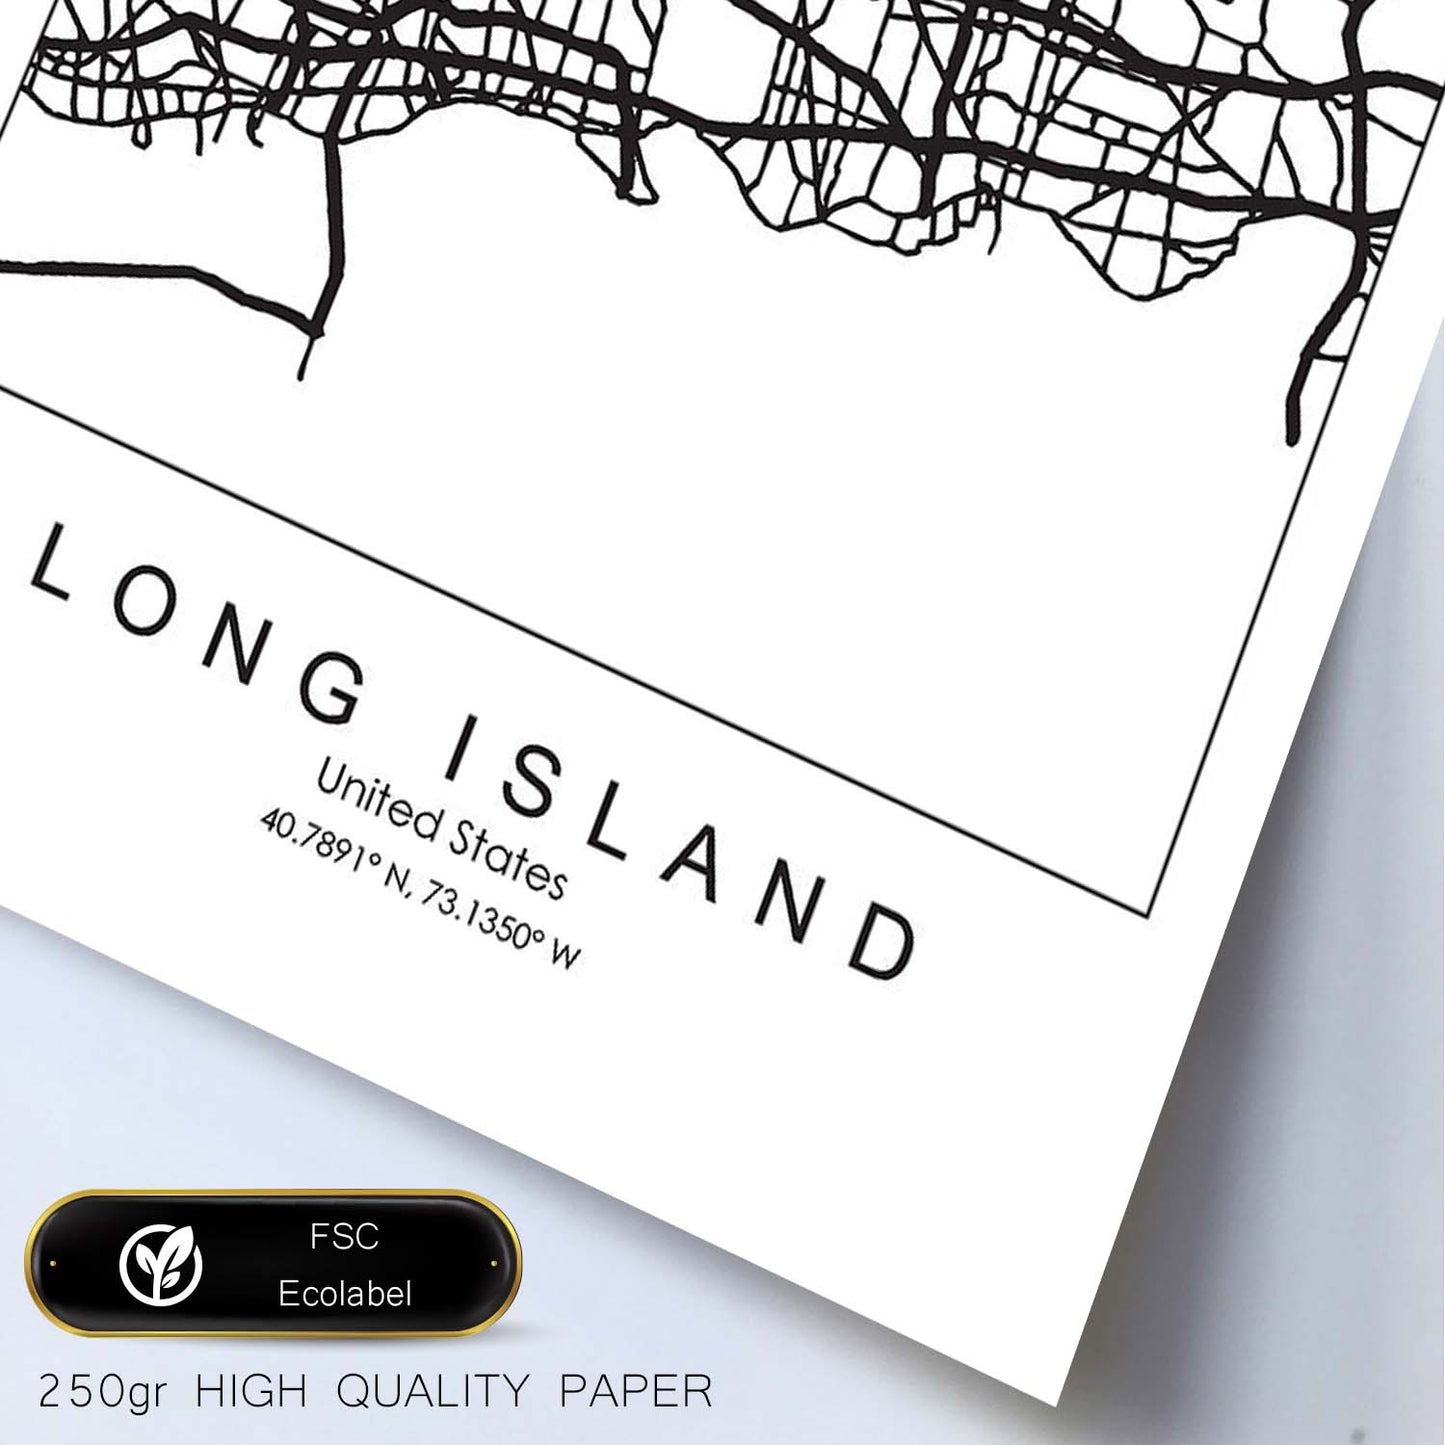 Poster con mapa de Long Island. Lámina de Estados Unidos, con imágenes de mapas y carreteras-Artwork-Nacnic-Nacnic Estudio SL